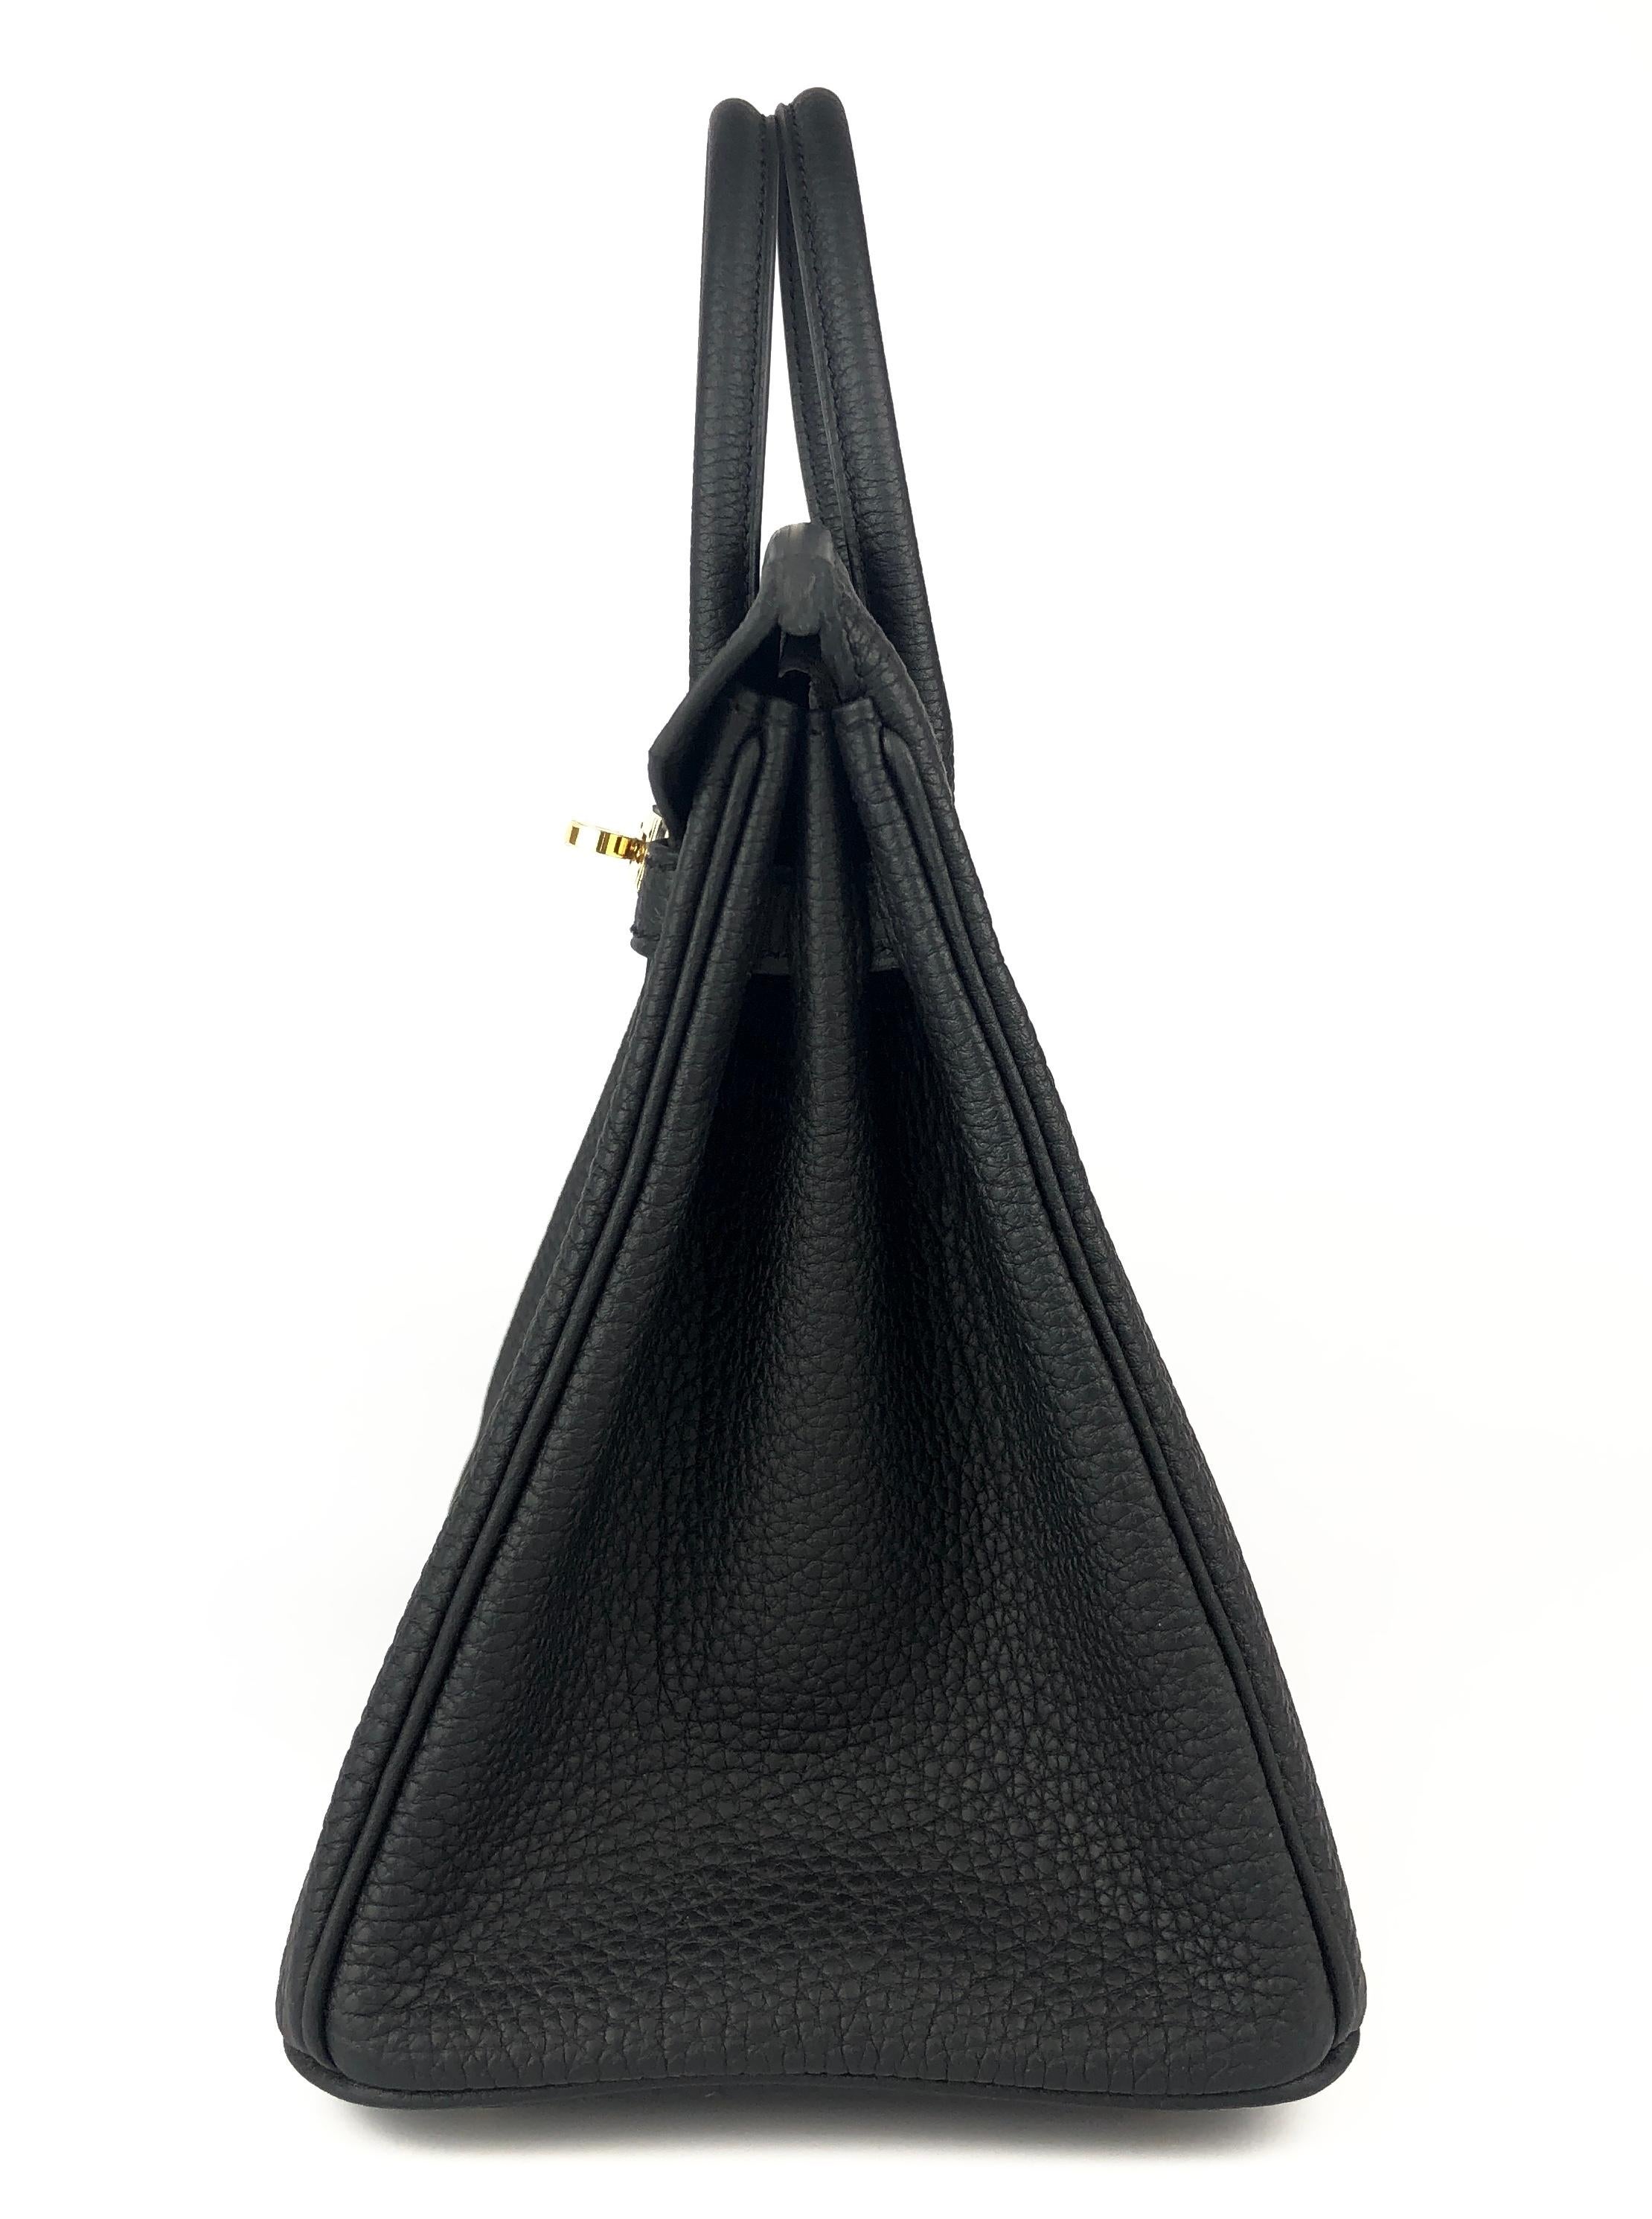 Hermes Birkin 25 Black Noir Togo Leather Handbag Gold Hardware 2022 5